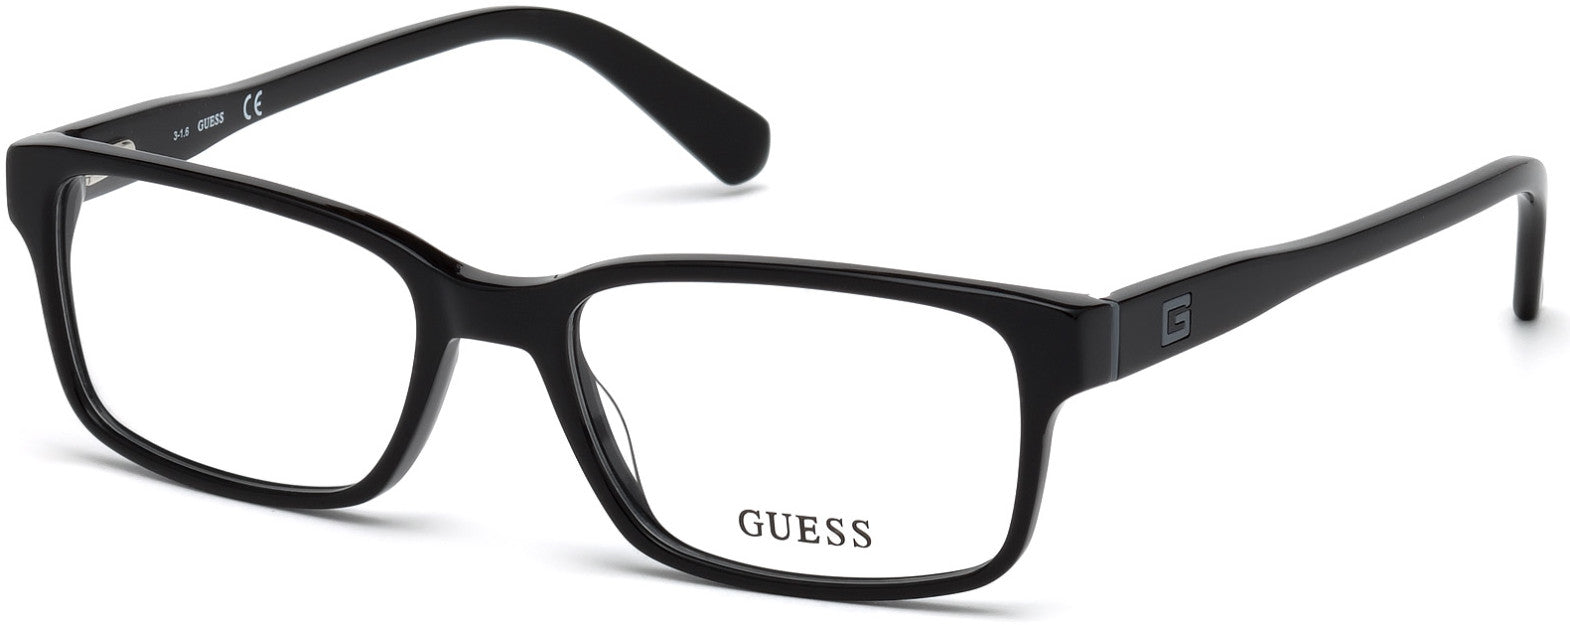 Guess GU1906 Geometric Eyeglasses 001-001 - Shiny Black